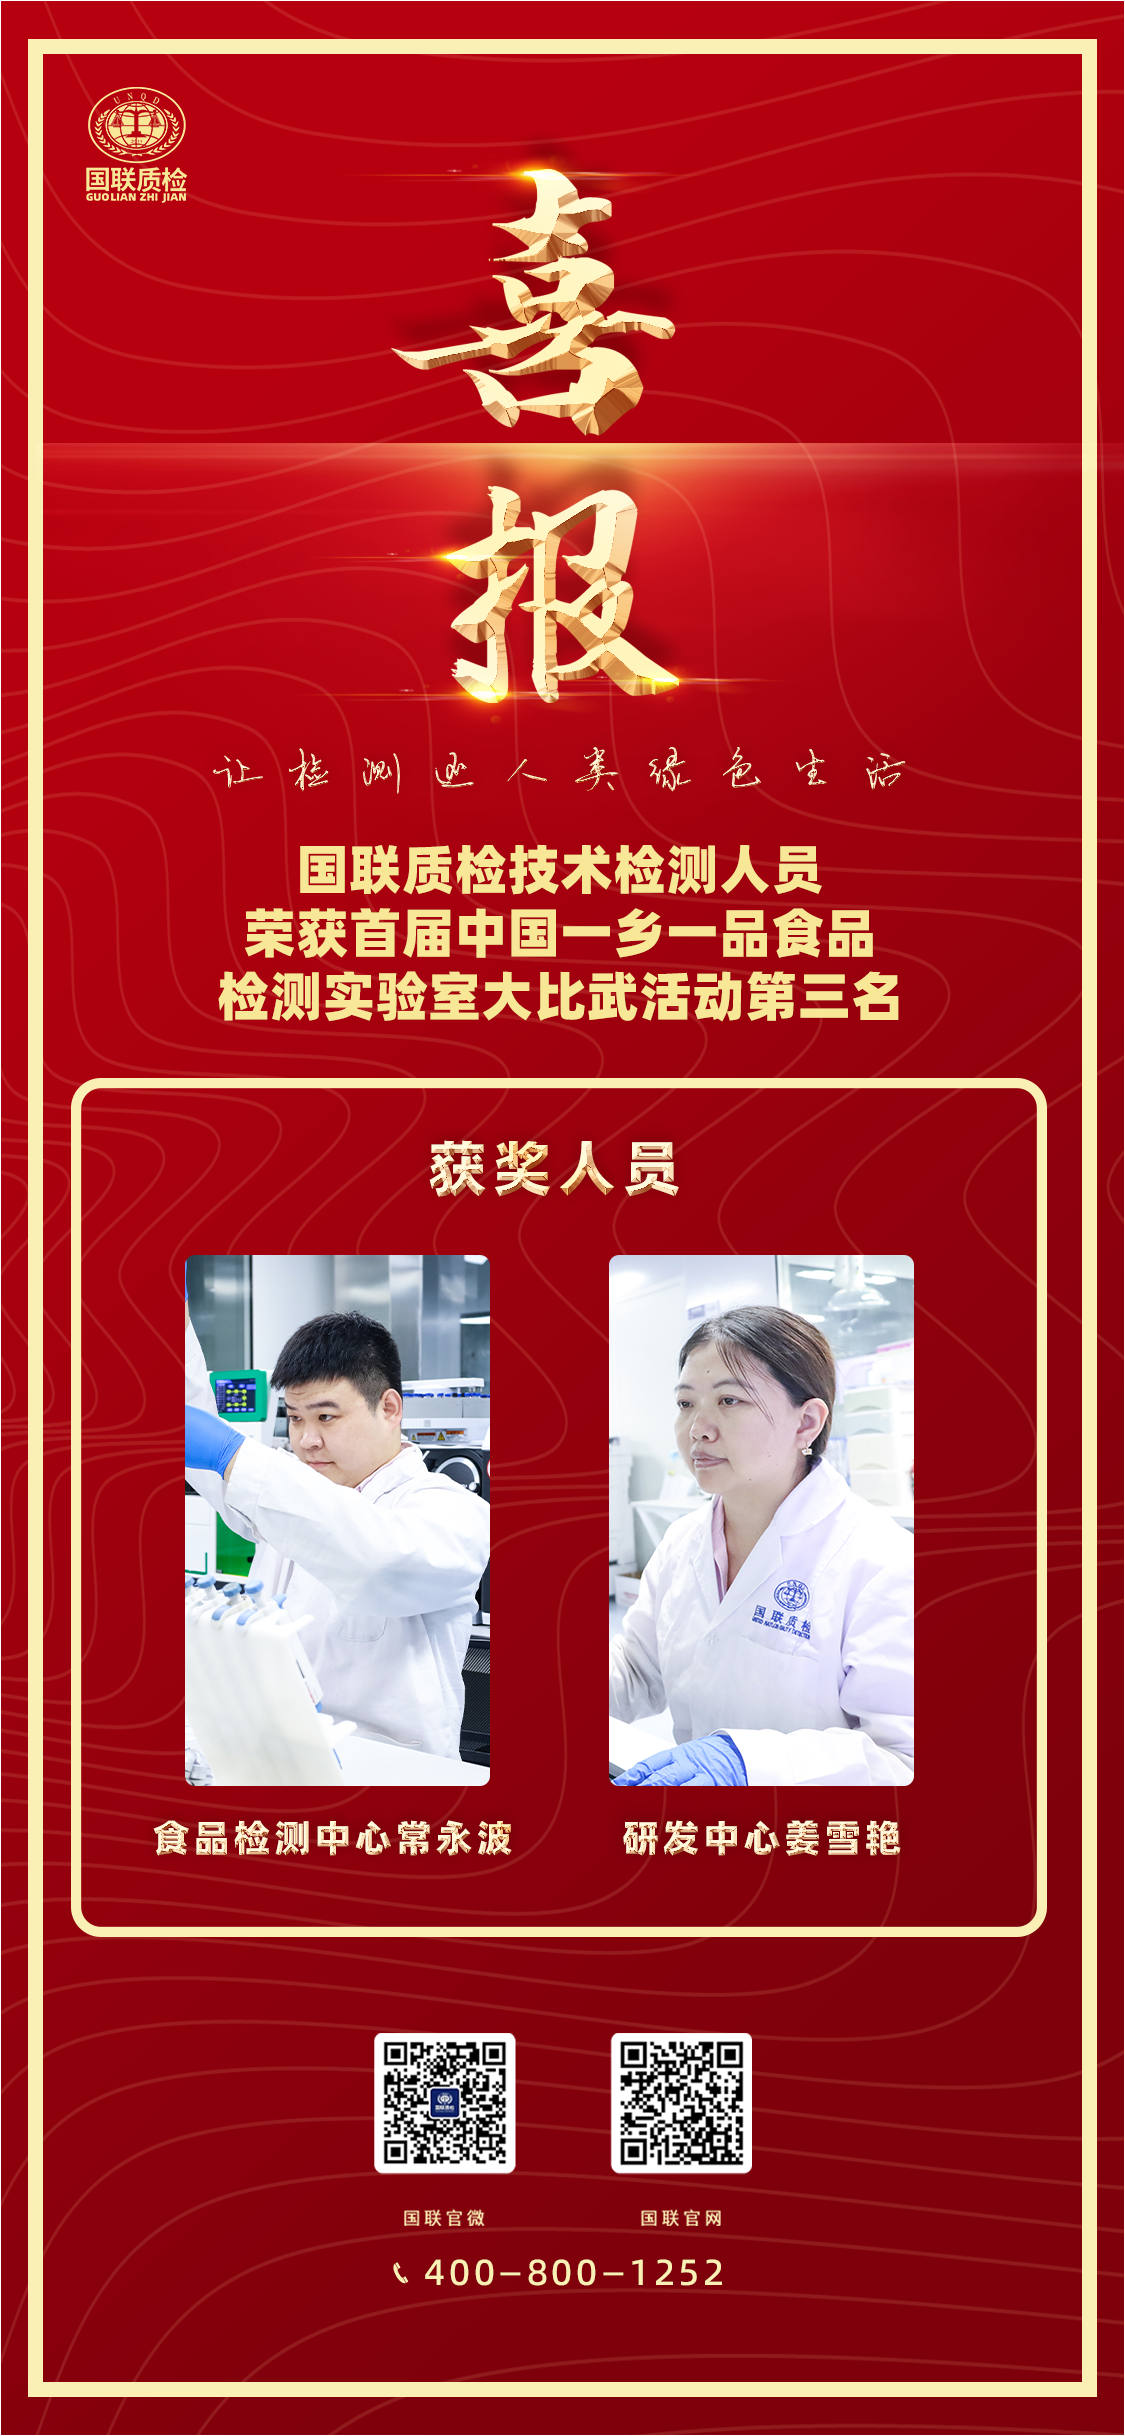 国联质检技术人员荣获首届中国一乡一品食品检测实验室大比武第三名.png